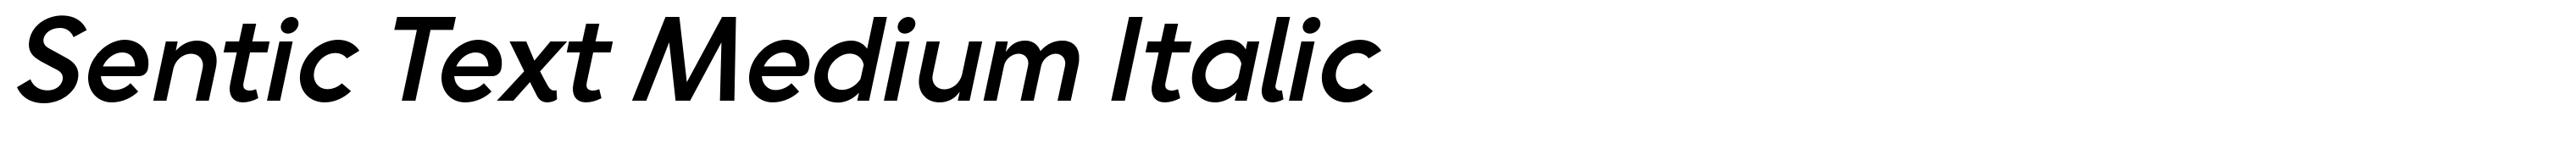 Sentic Text Medium Italic